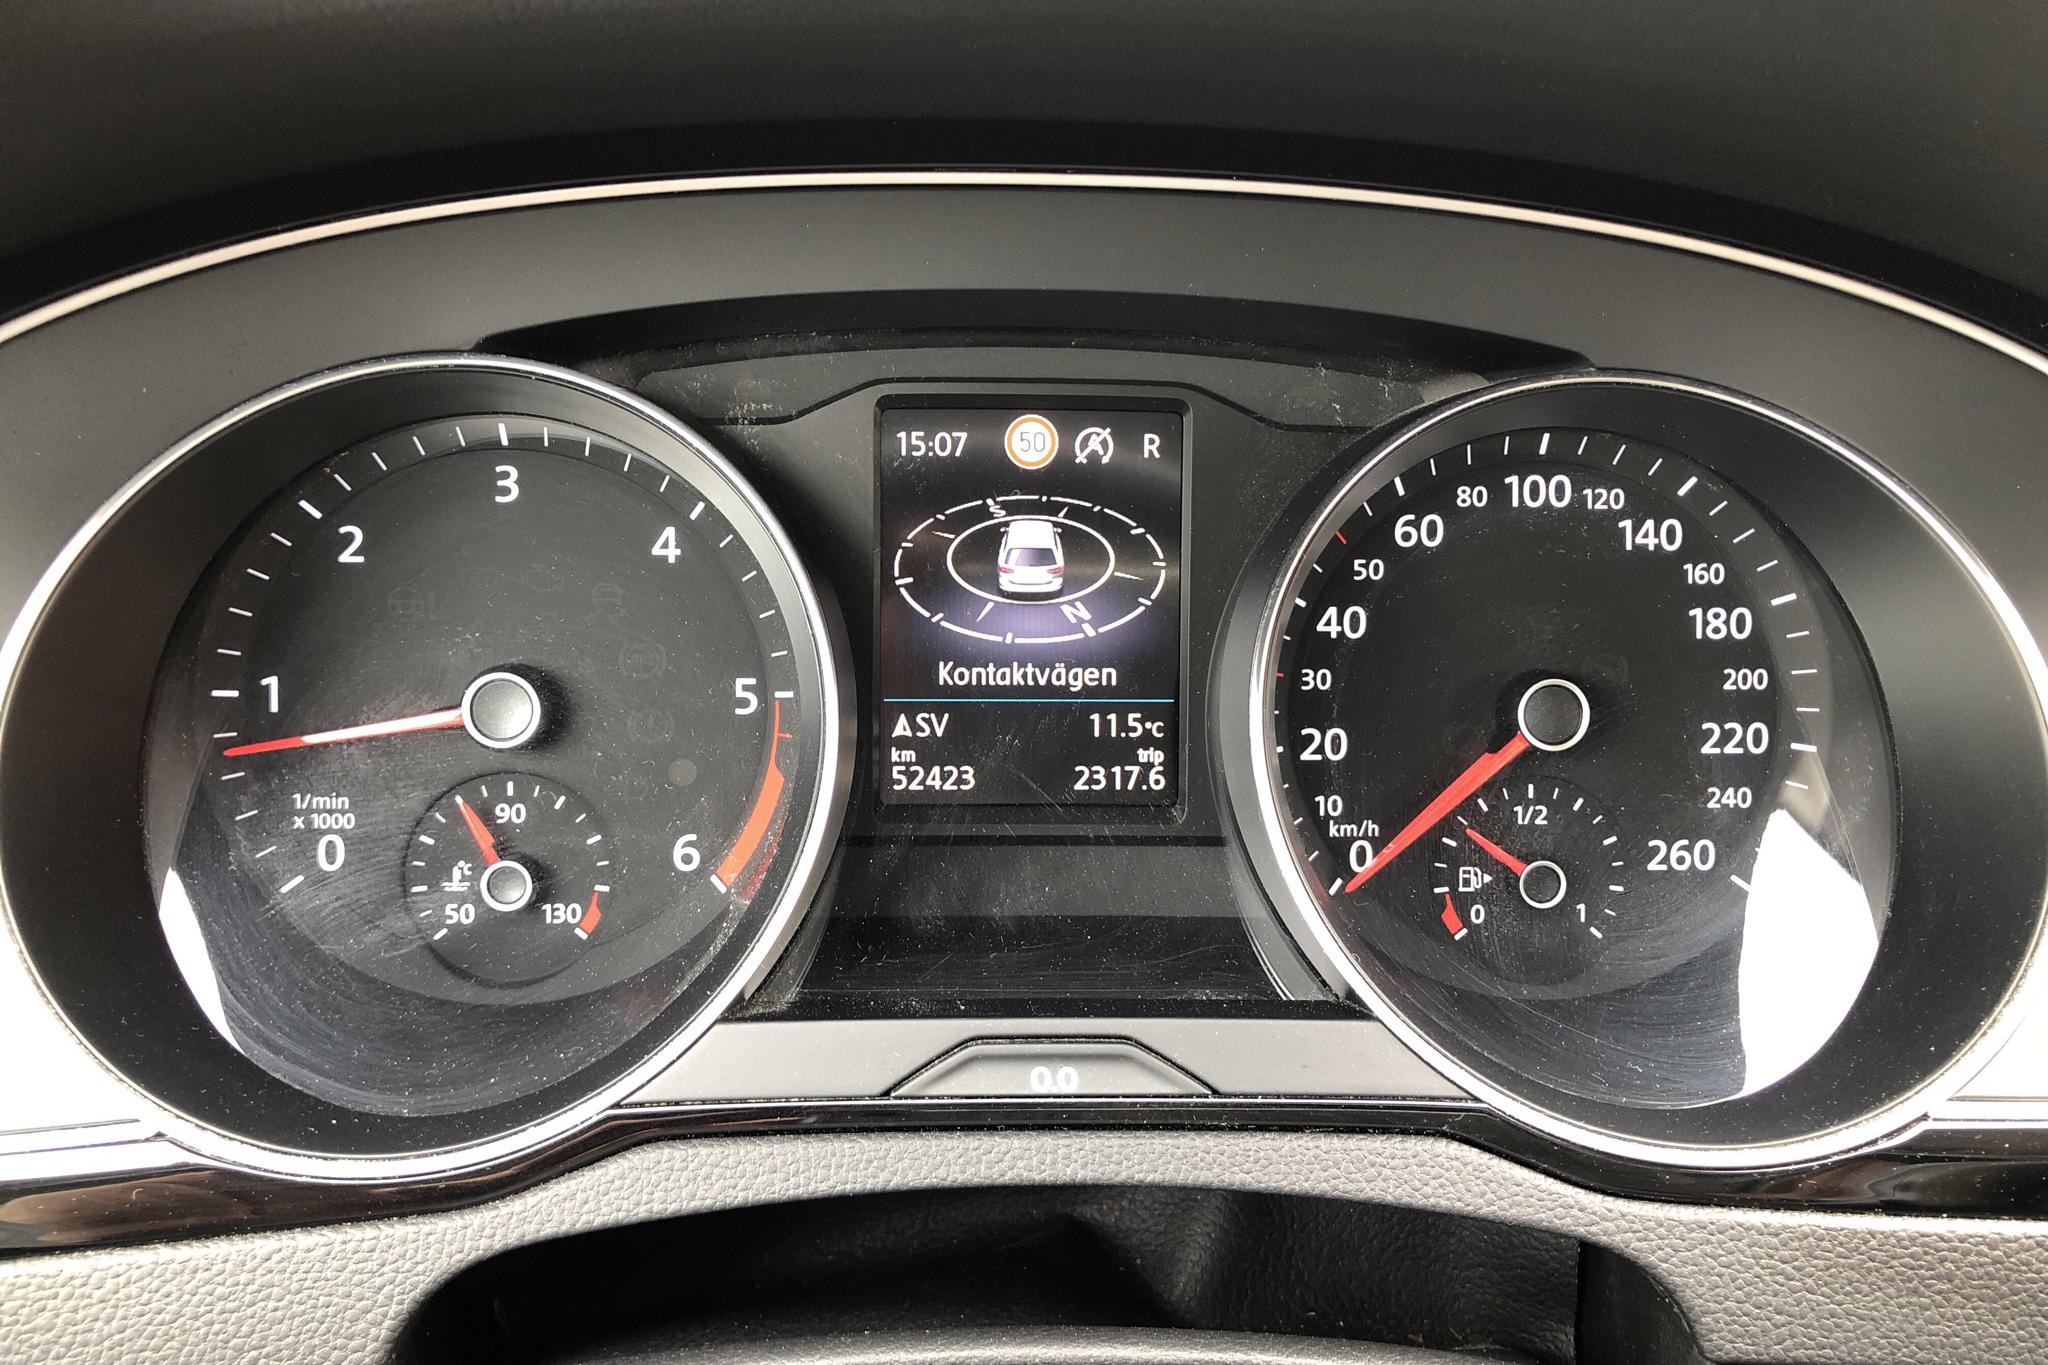 VW Passat 2.0 TDI Alltrack 4MOTION (190hk) - 52 390 km - Automatic - white - 2020